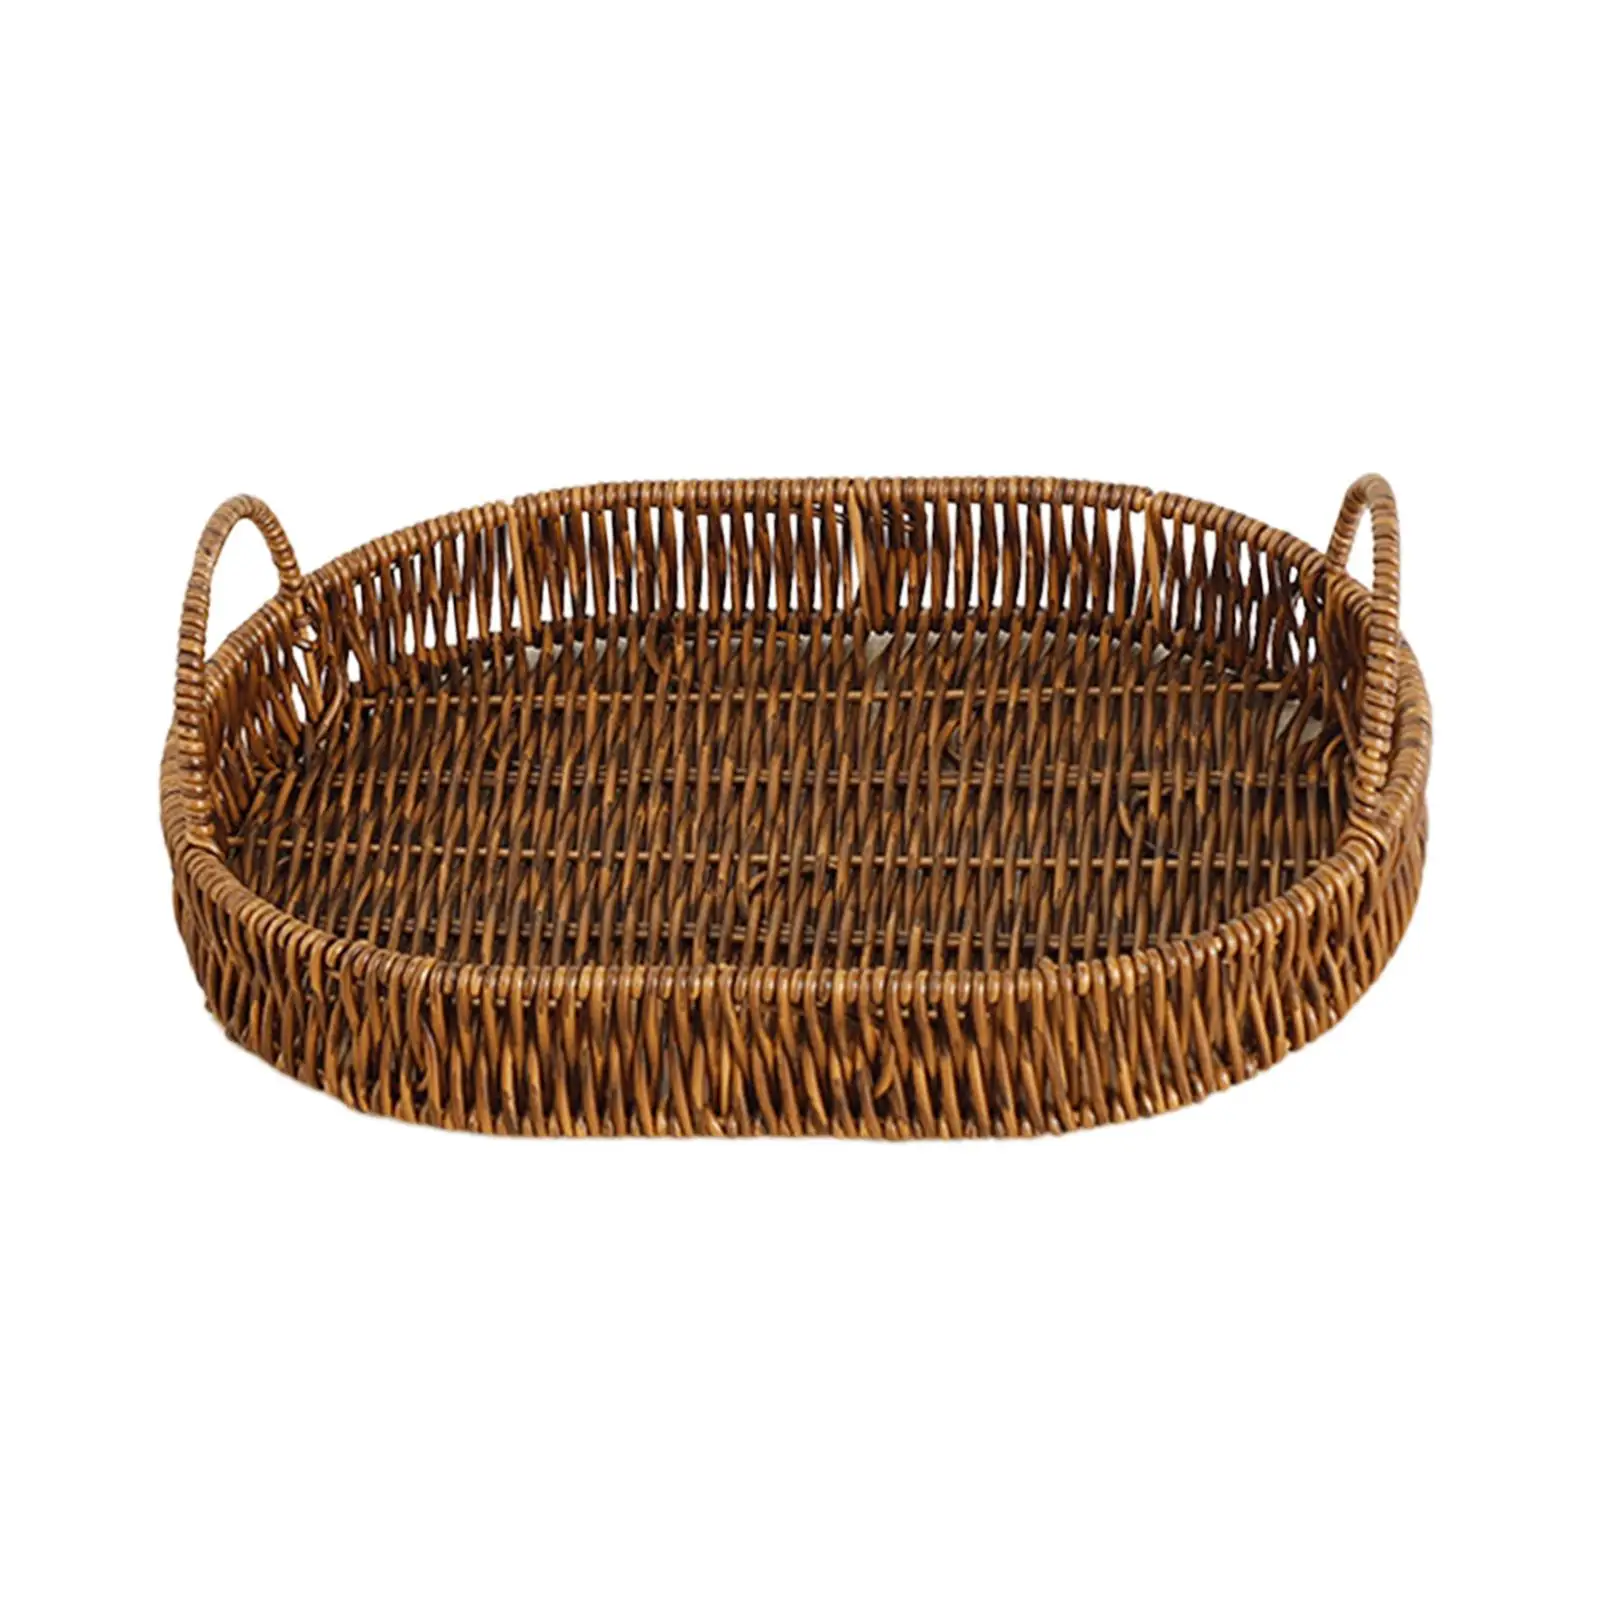 Wicker Woven Bread Basket Kitchen Organizer Wicker Oval Fruit Bowl for Hotel